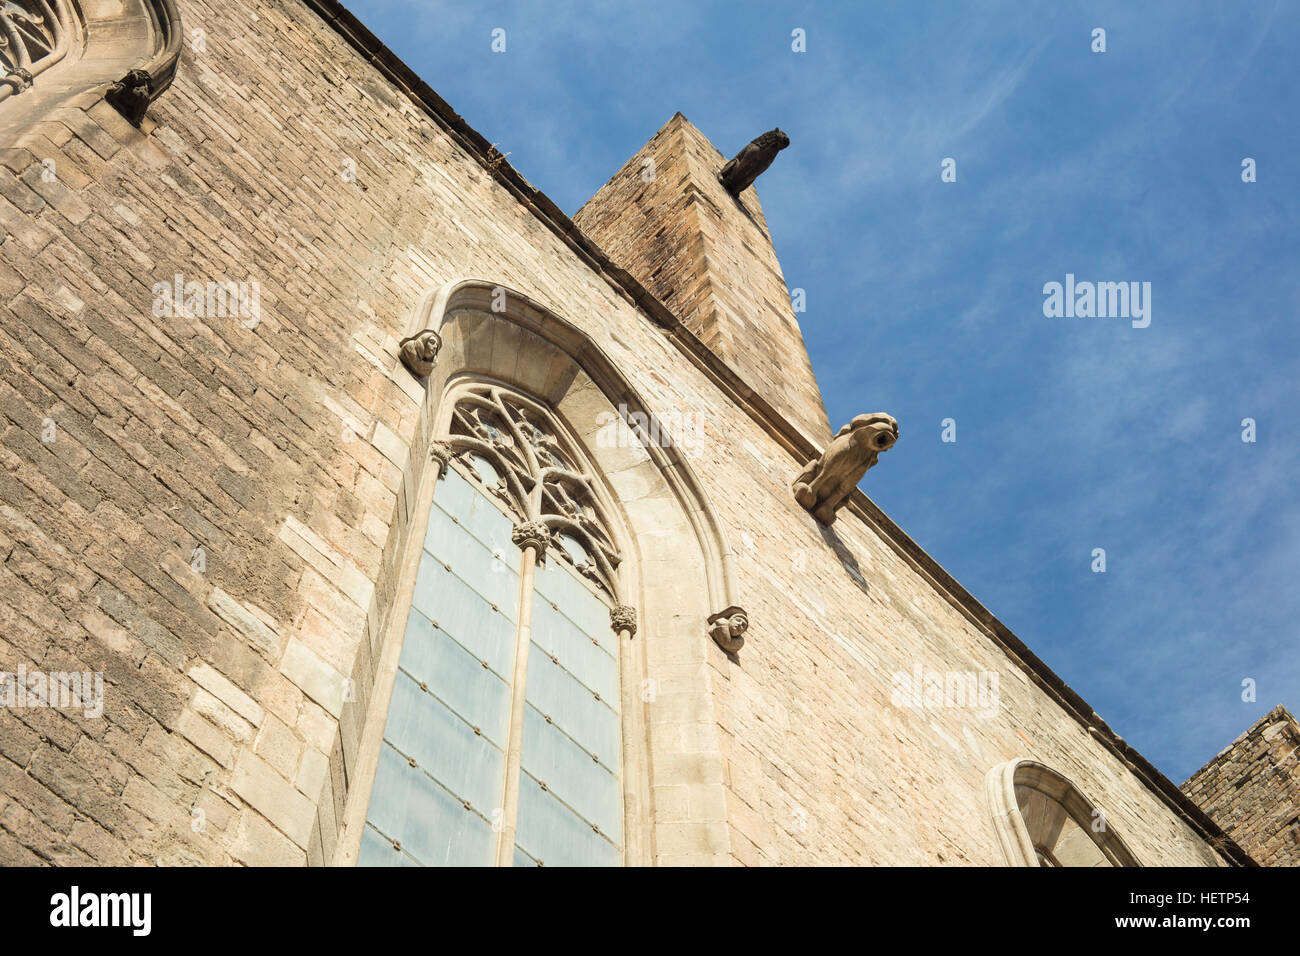 Santa María del Mar (la Catedral de Saint Mary's) en Barcelona, España. Es una iglesia gótica catalana construida durante 1329-1383. Foto de stock